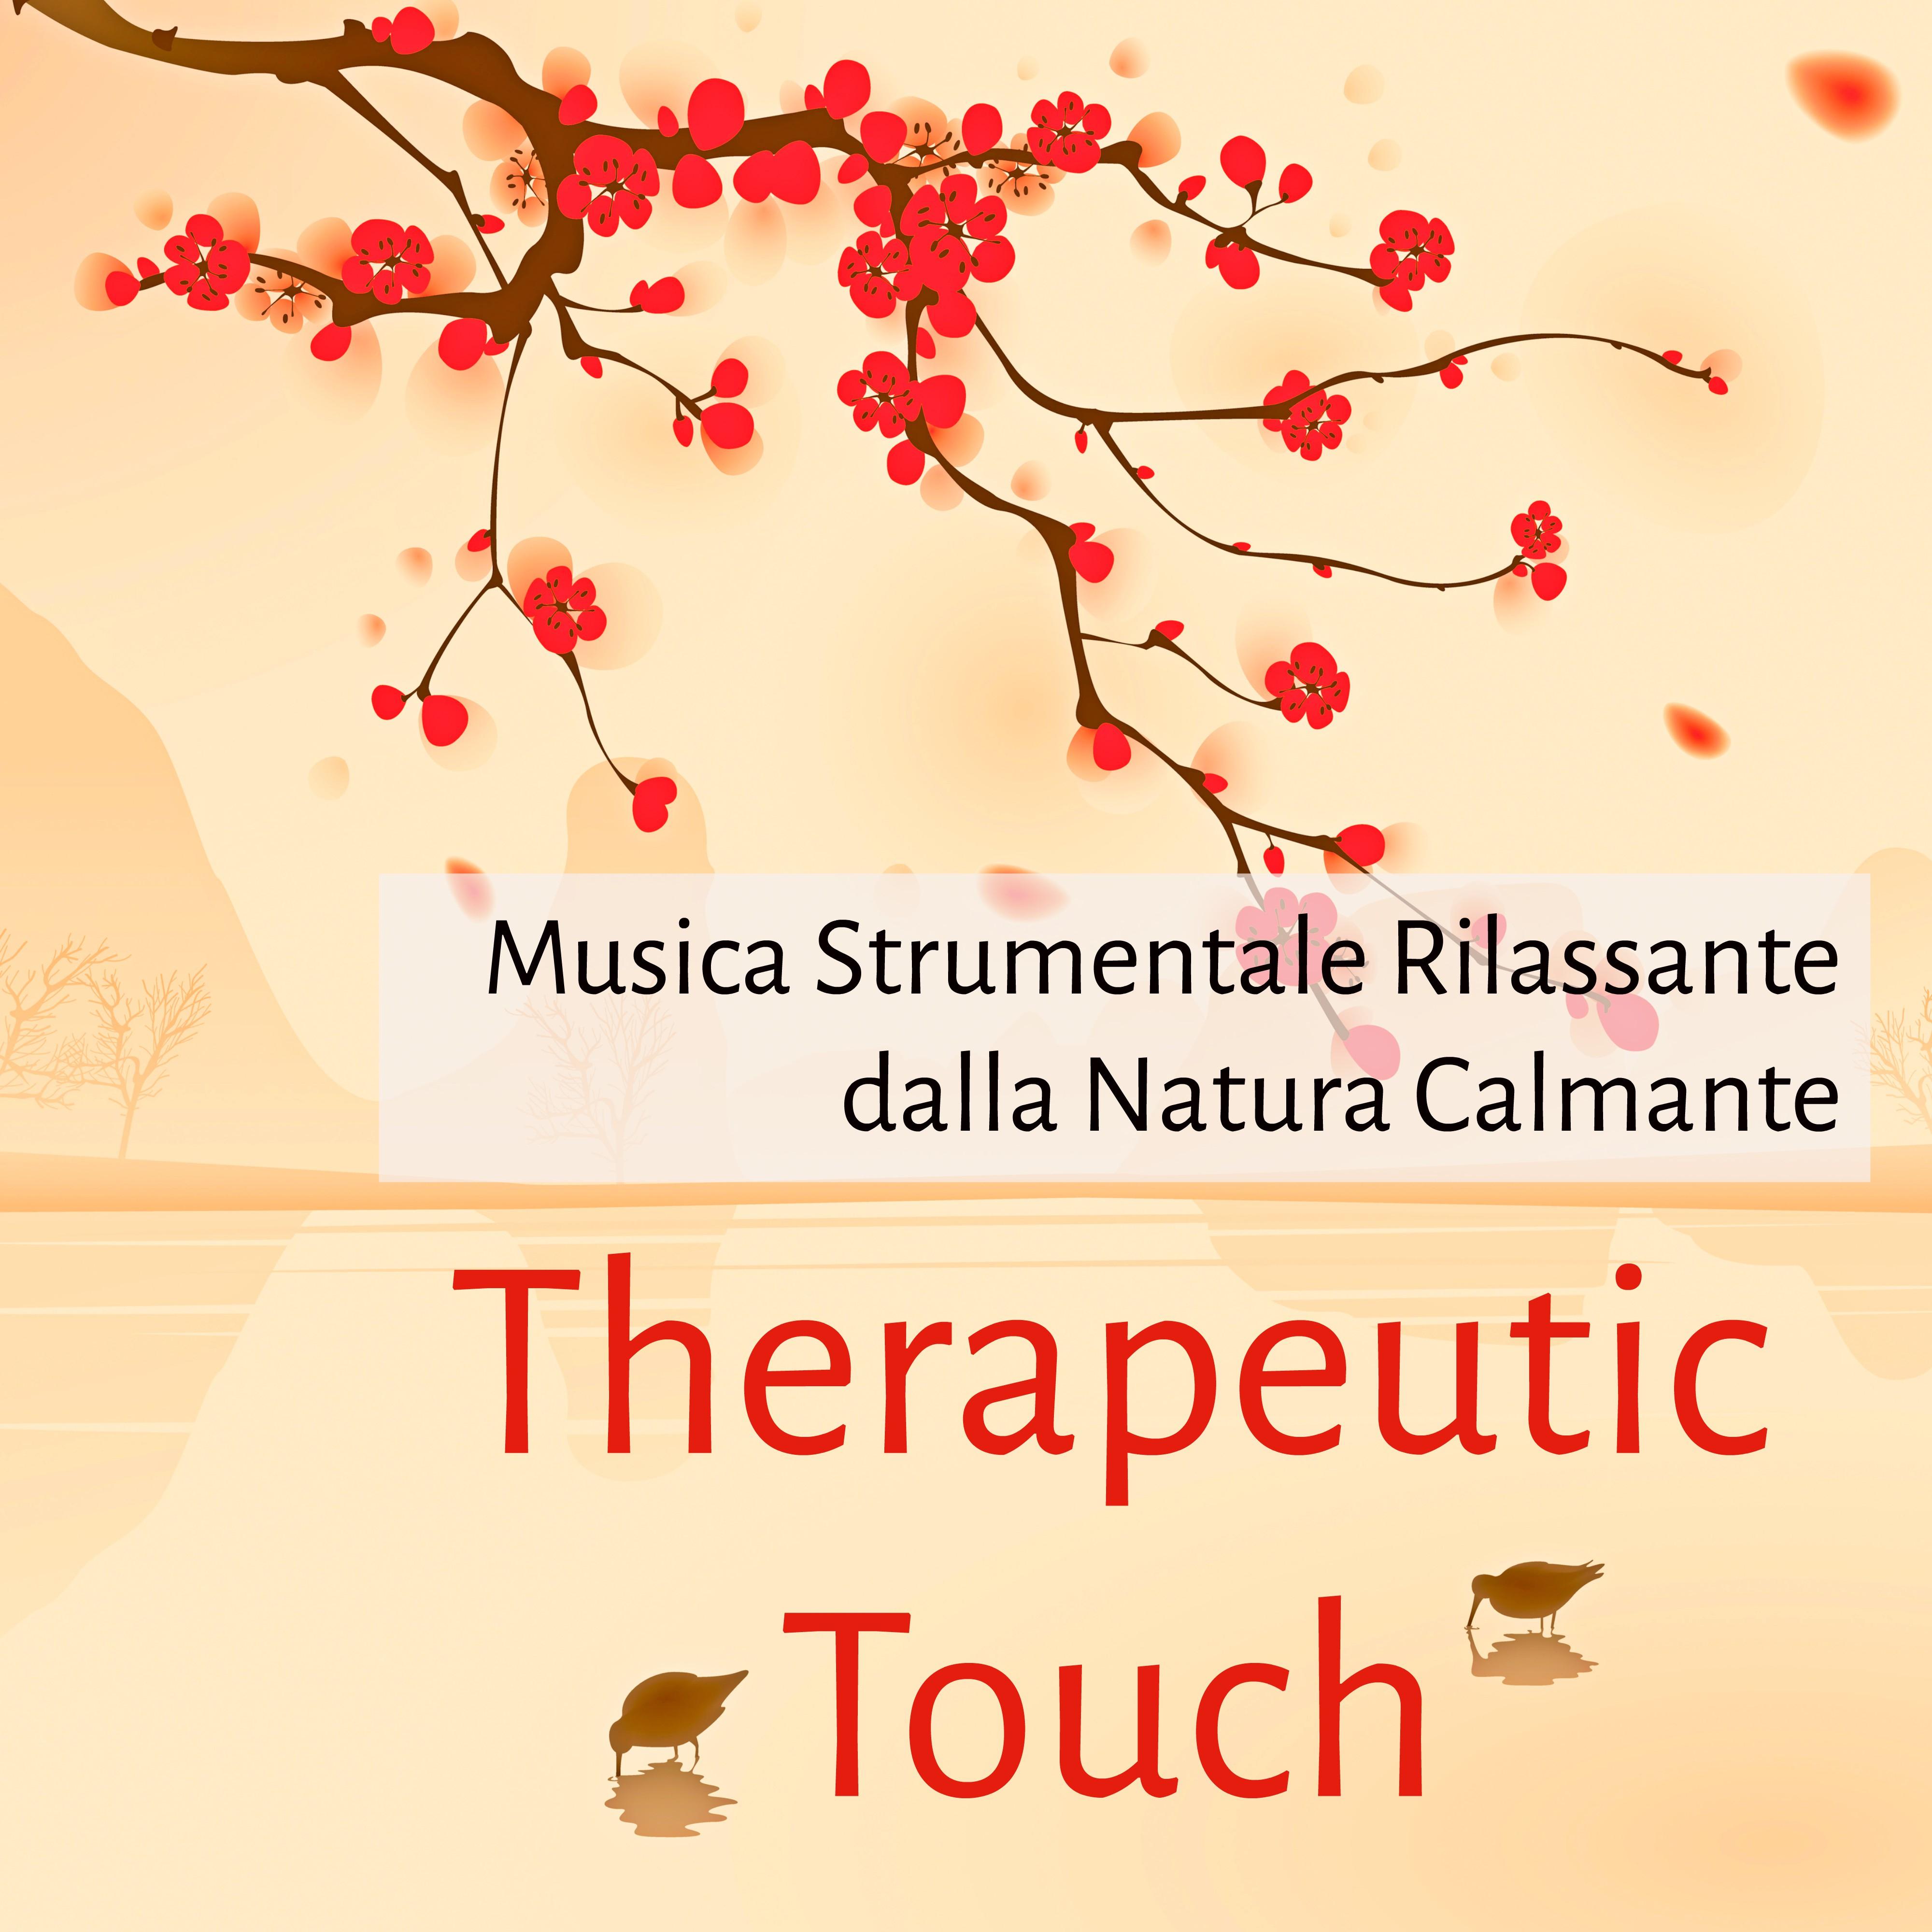 Therapeutic Touch - Musica Strumentale Rilassante dalla Natura Calmante per Massaggio Terapeutico Benessere Allenare la Mente Aumentare Concentrazione Training Autogeno